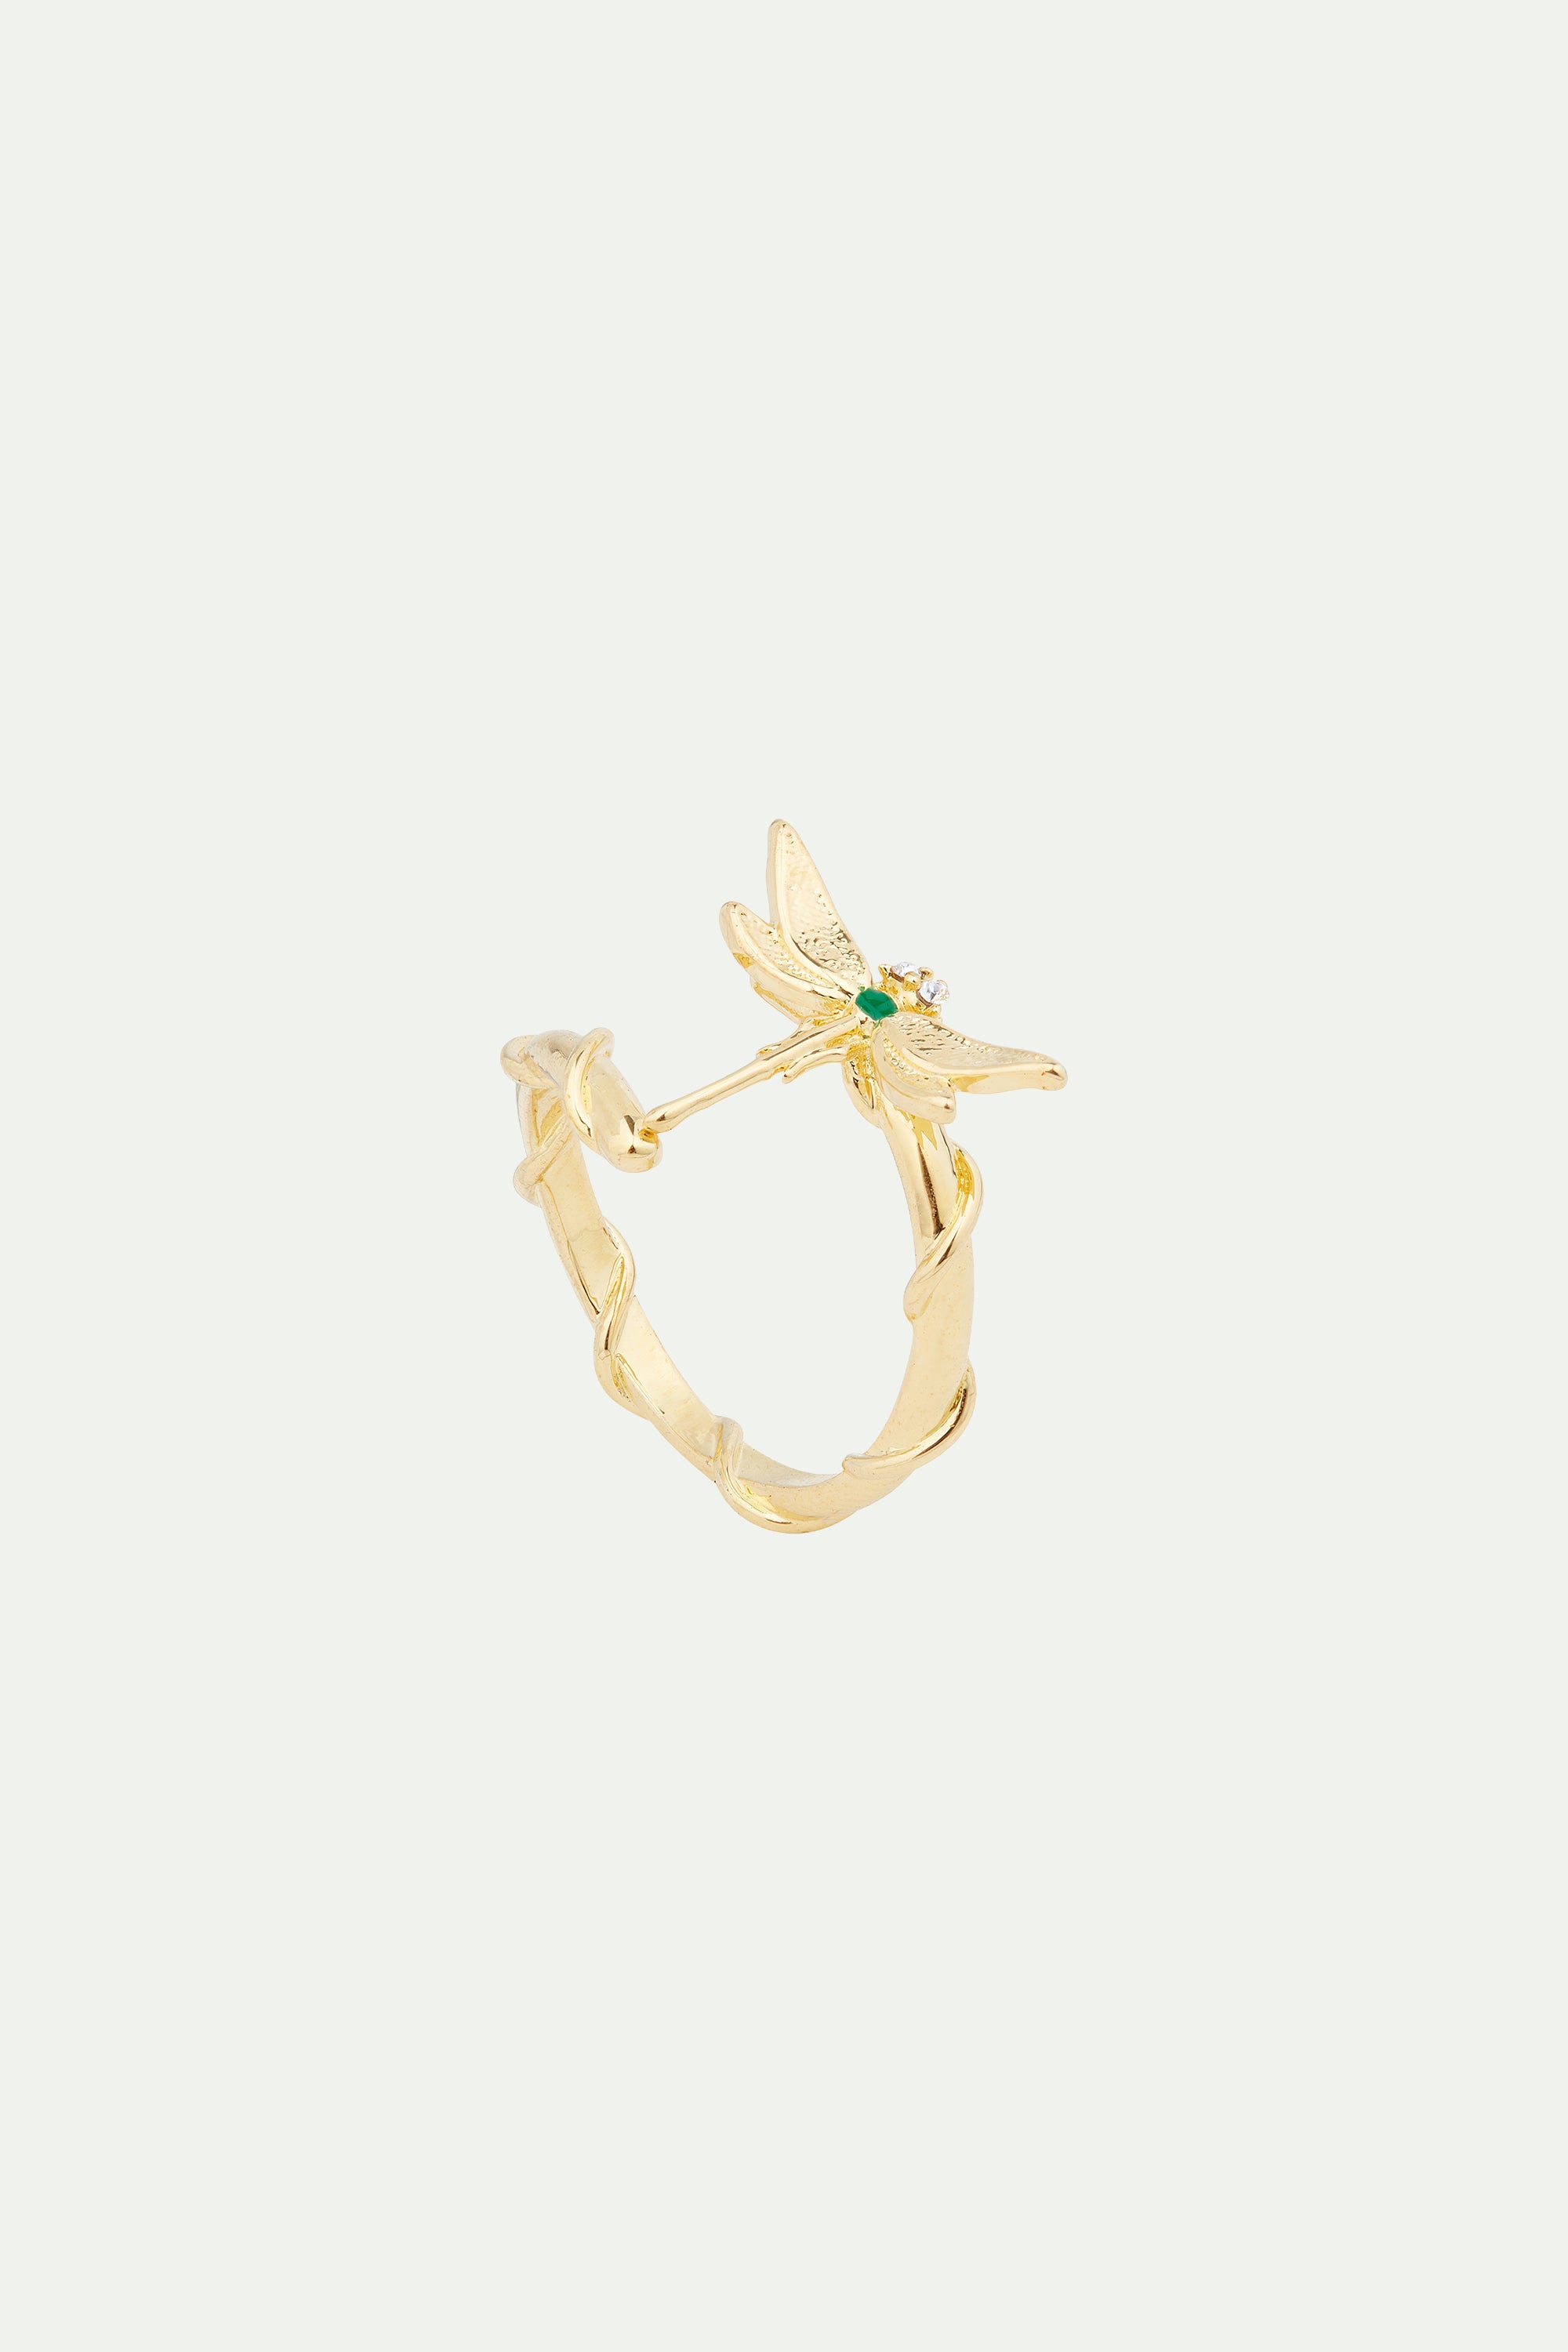 Golden dragonfly adjustable ring